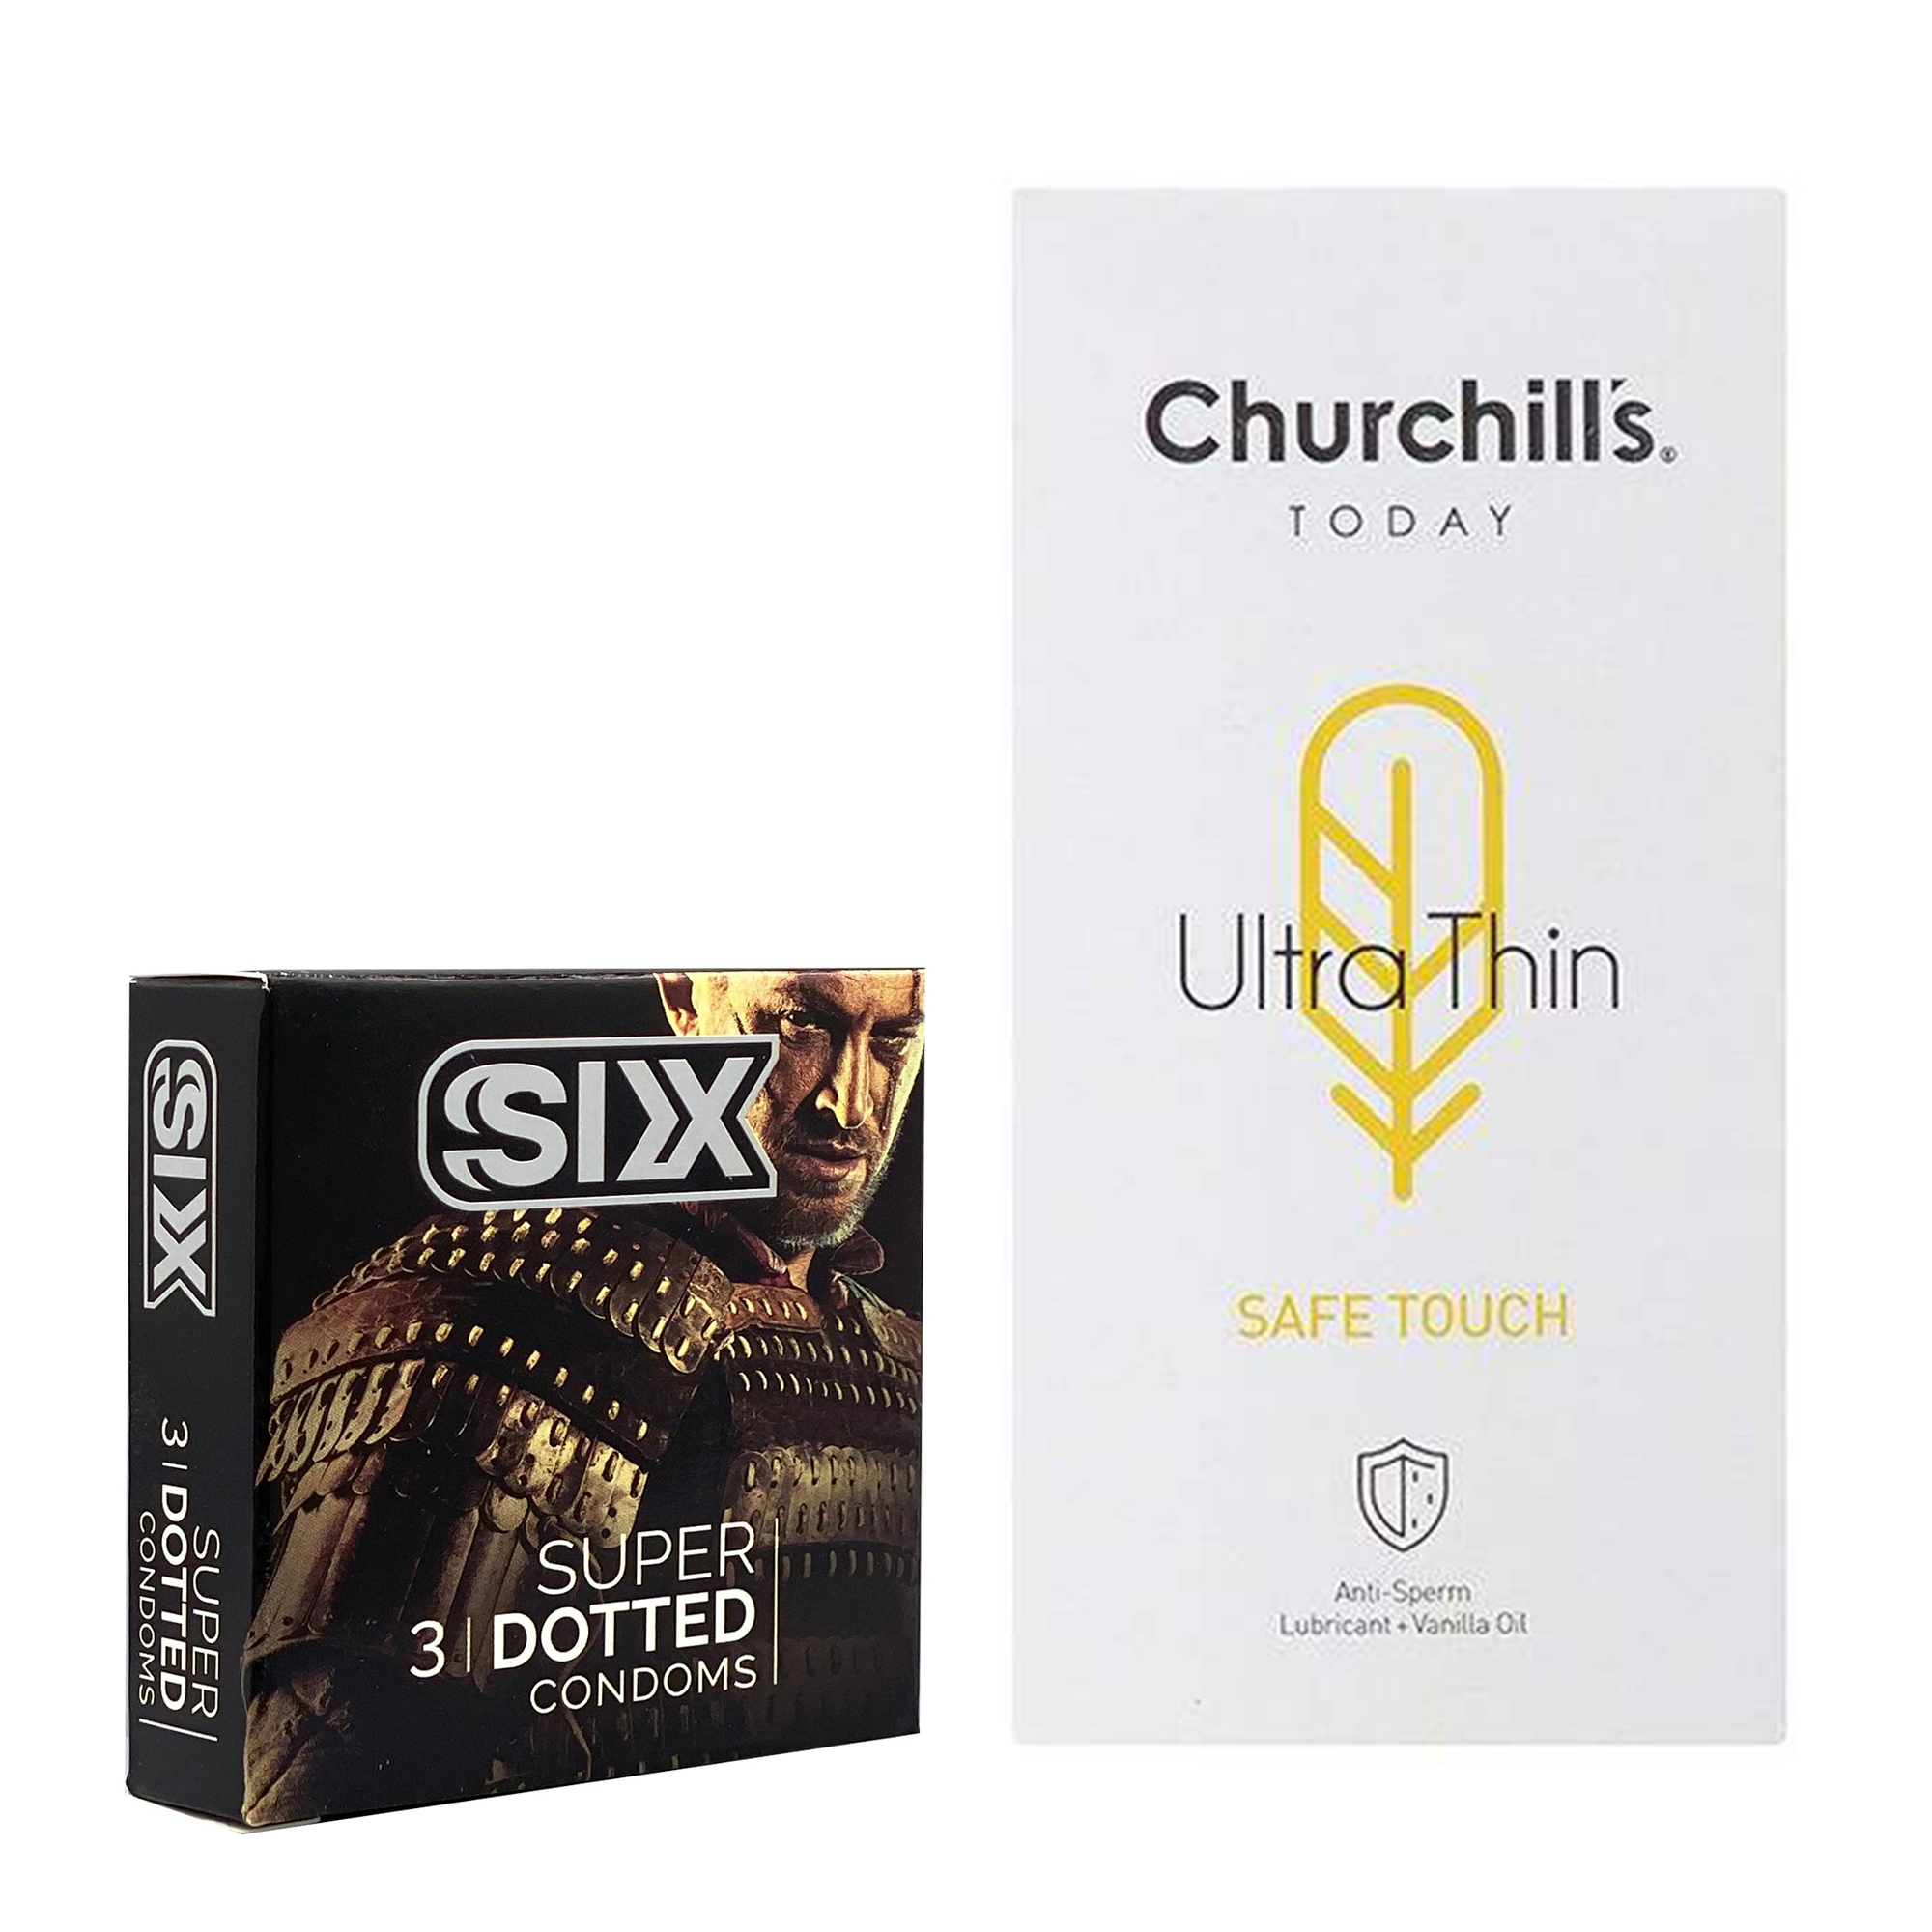 کاندوم چرچیلز مدل Safe Touch بسته 12 عددی به همراه کاندوم سیکس مدل خاردار بسته 3 عددی 